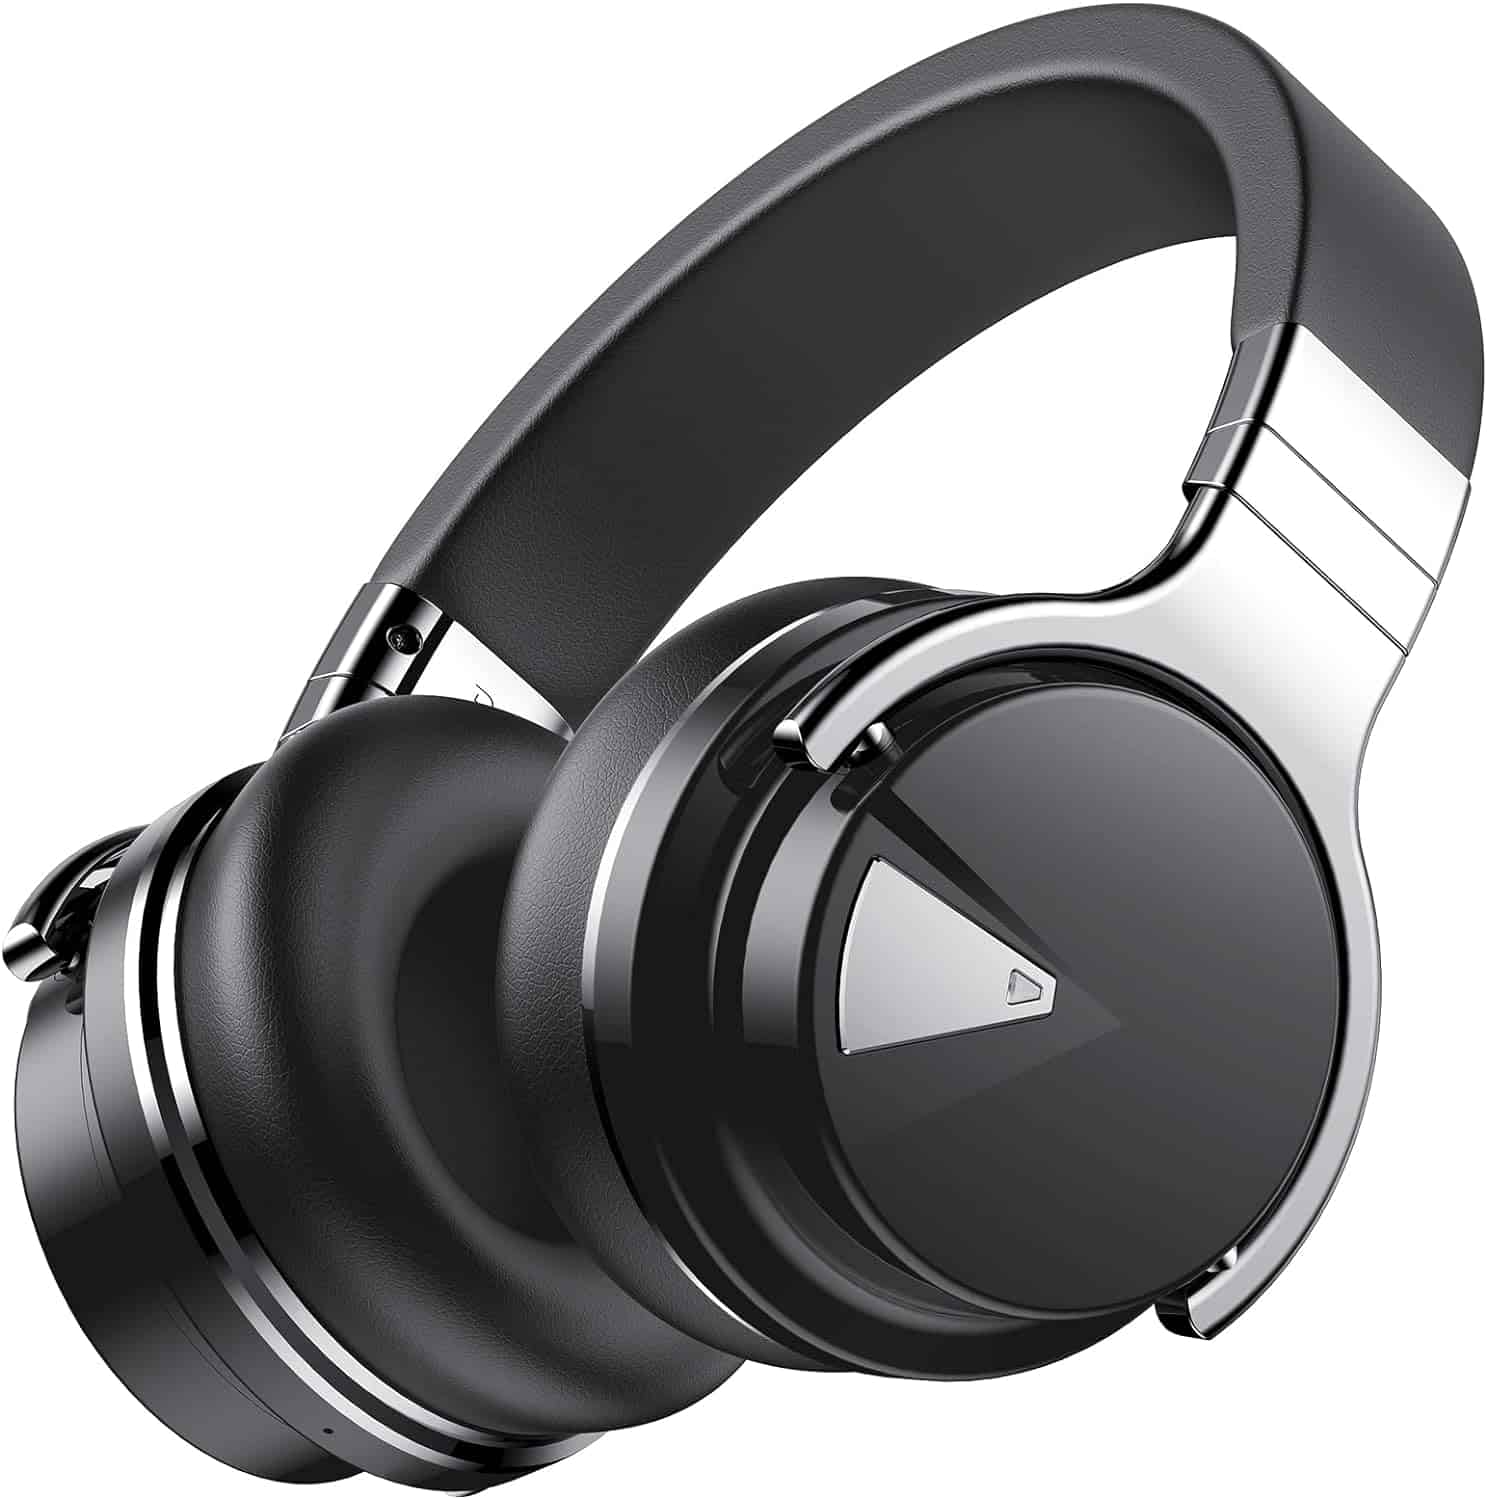 COWIN E7 PRO Active Noise Cancelling Headphones